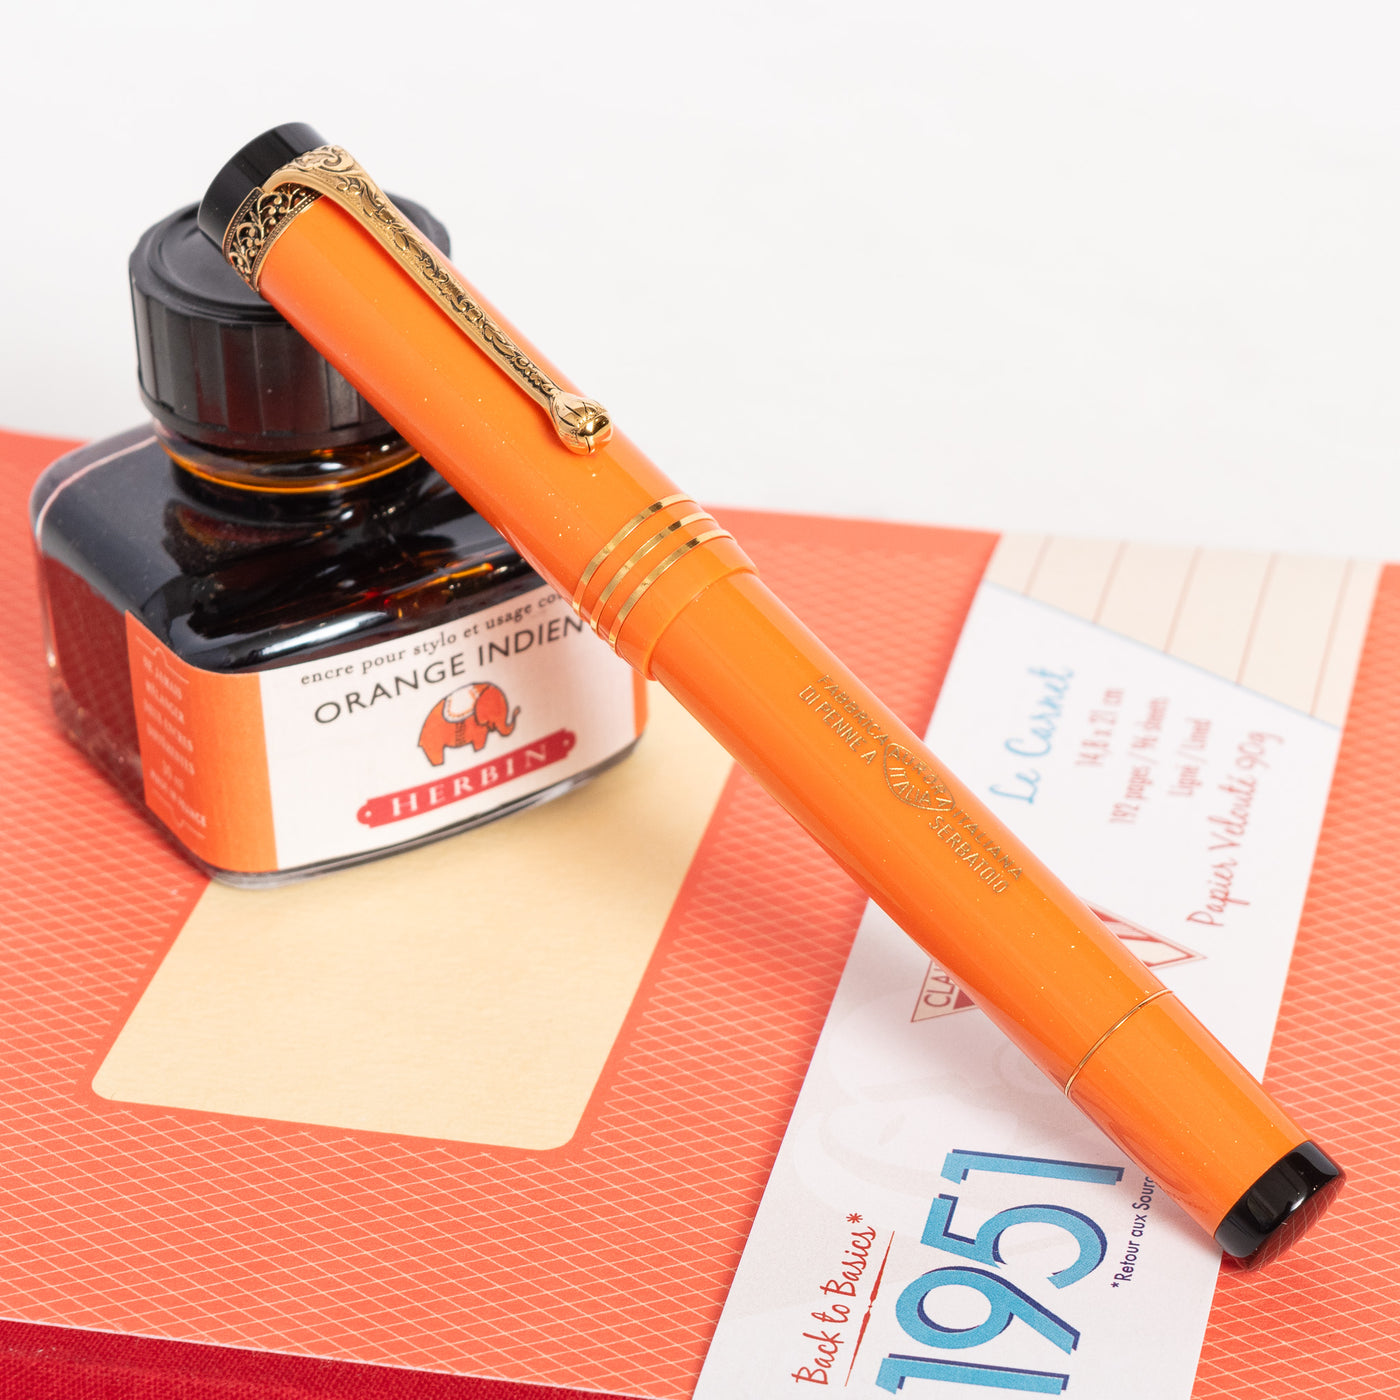 Aurora Internazionale Orange Limited Edition Fountain Pen capped